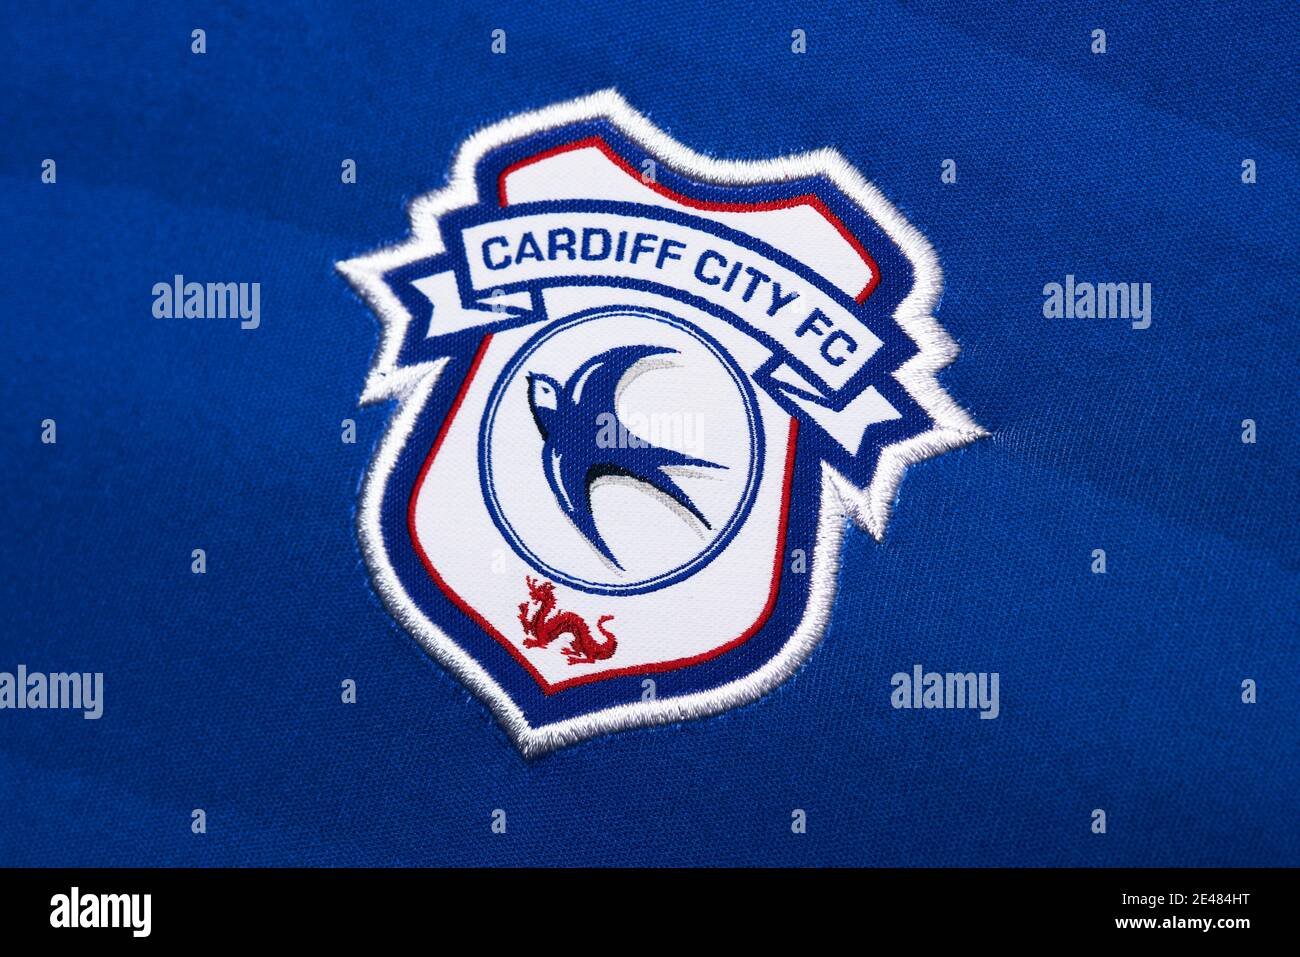 CARDIFF CITY FC  Cardiff city fc, Cardiff city, ? logo